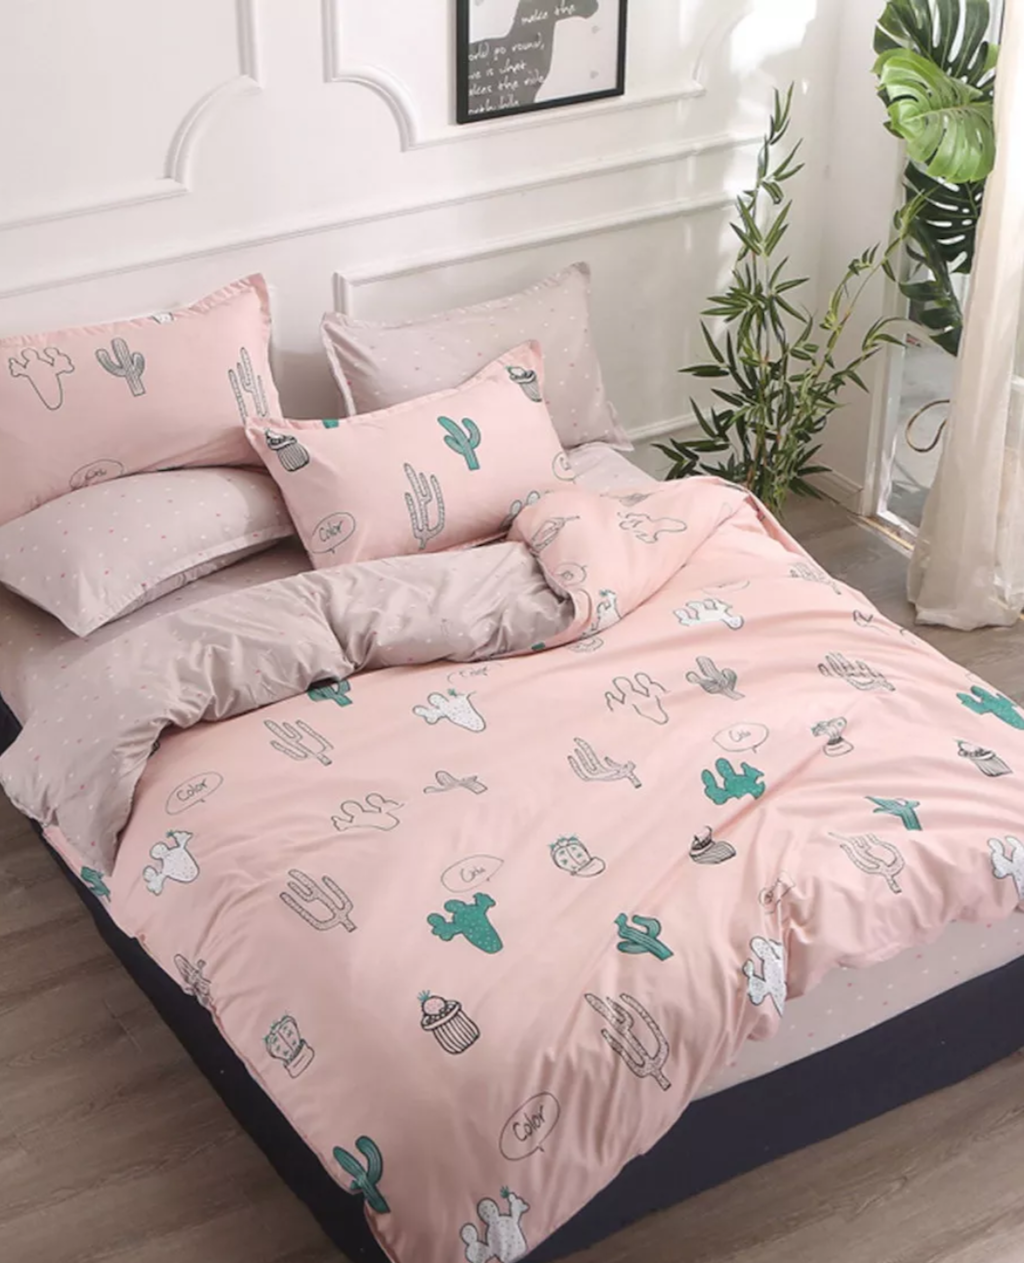 vrolijk-Shein-cactus-roze-beddengoed-dekbedovertrek-mooi-kopen-materiaal-linnen-katoen